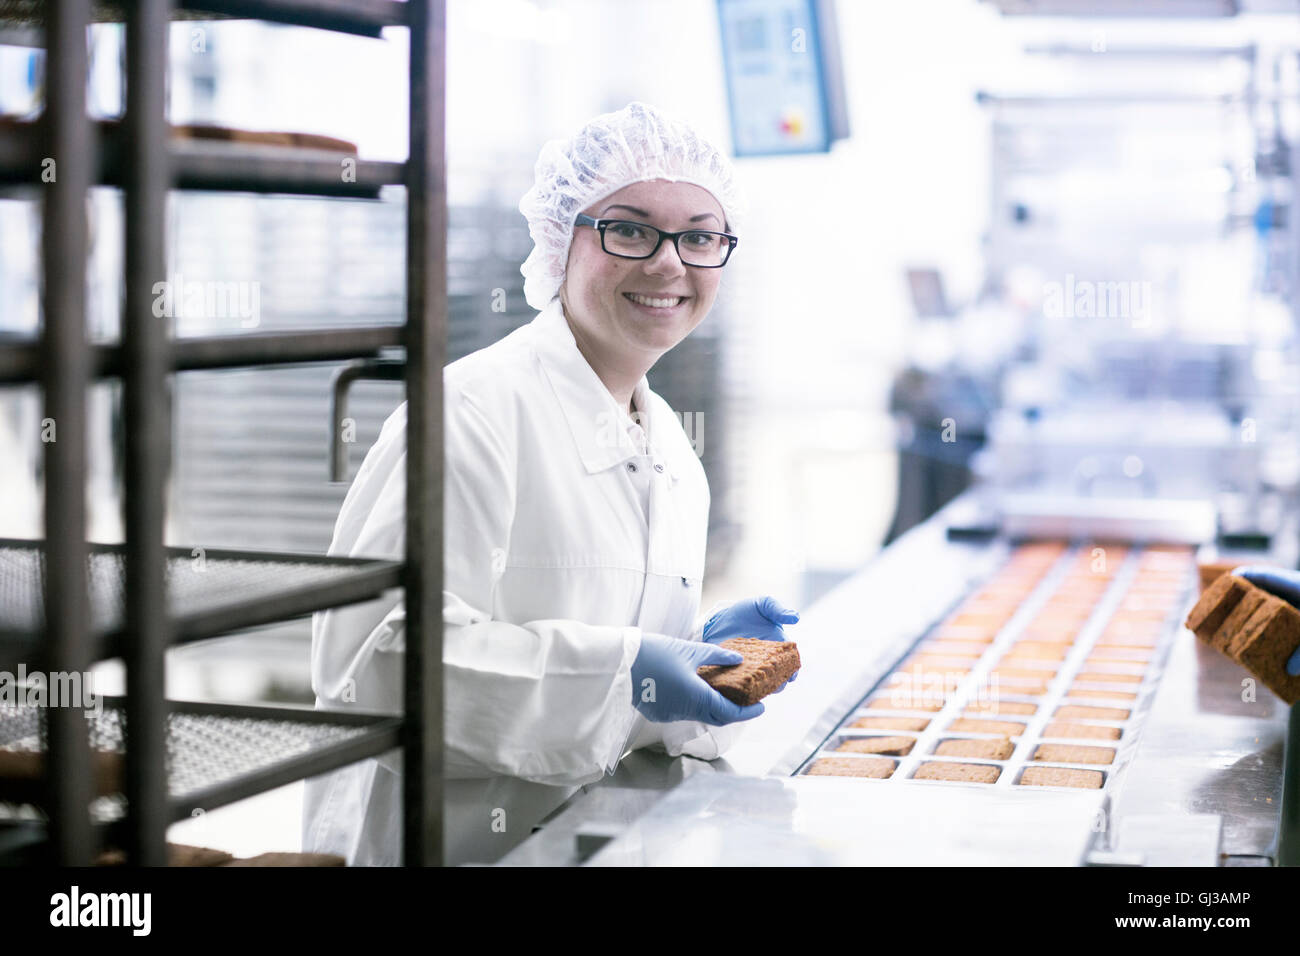 Trabajador de la fábrica de línea de producción alimentaria mirando a la cámara sonriendo Foto de stock